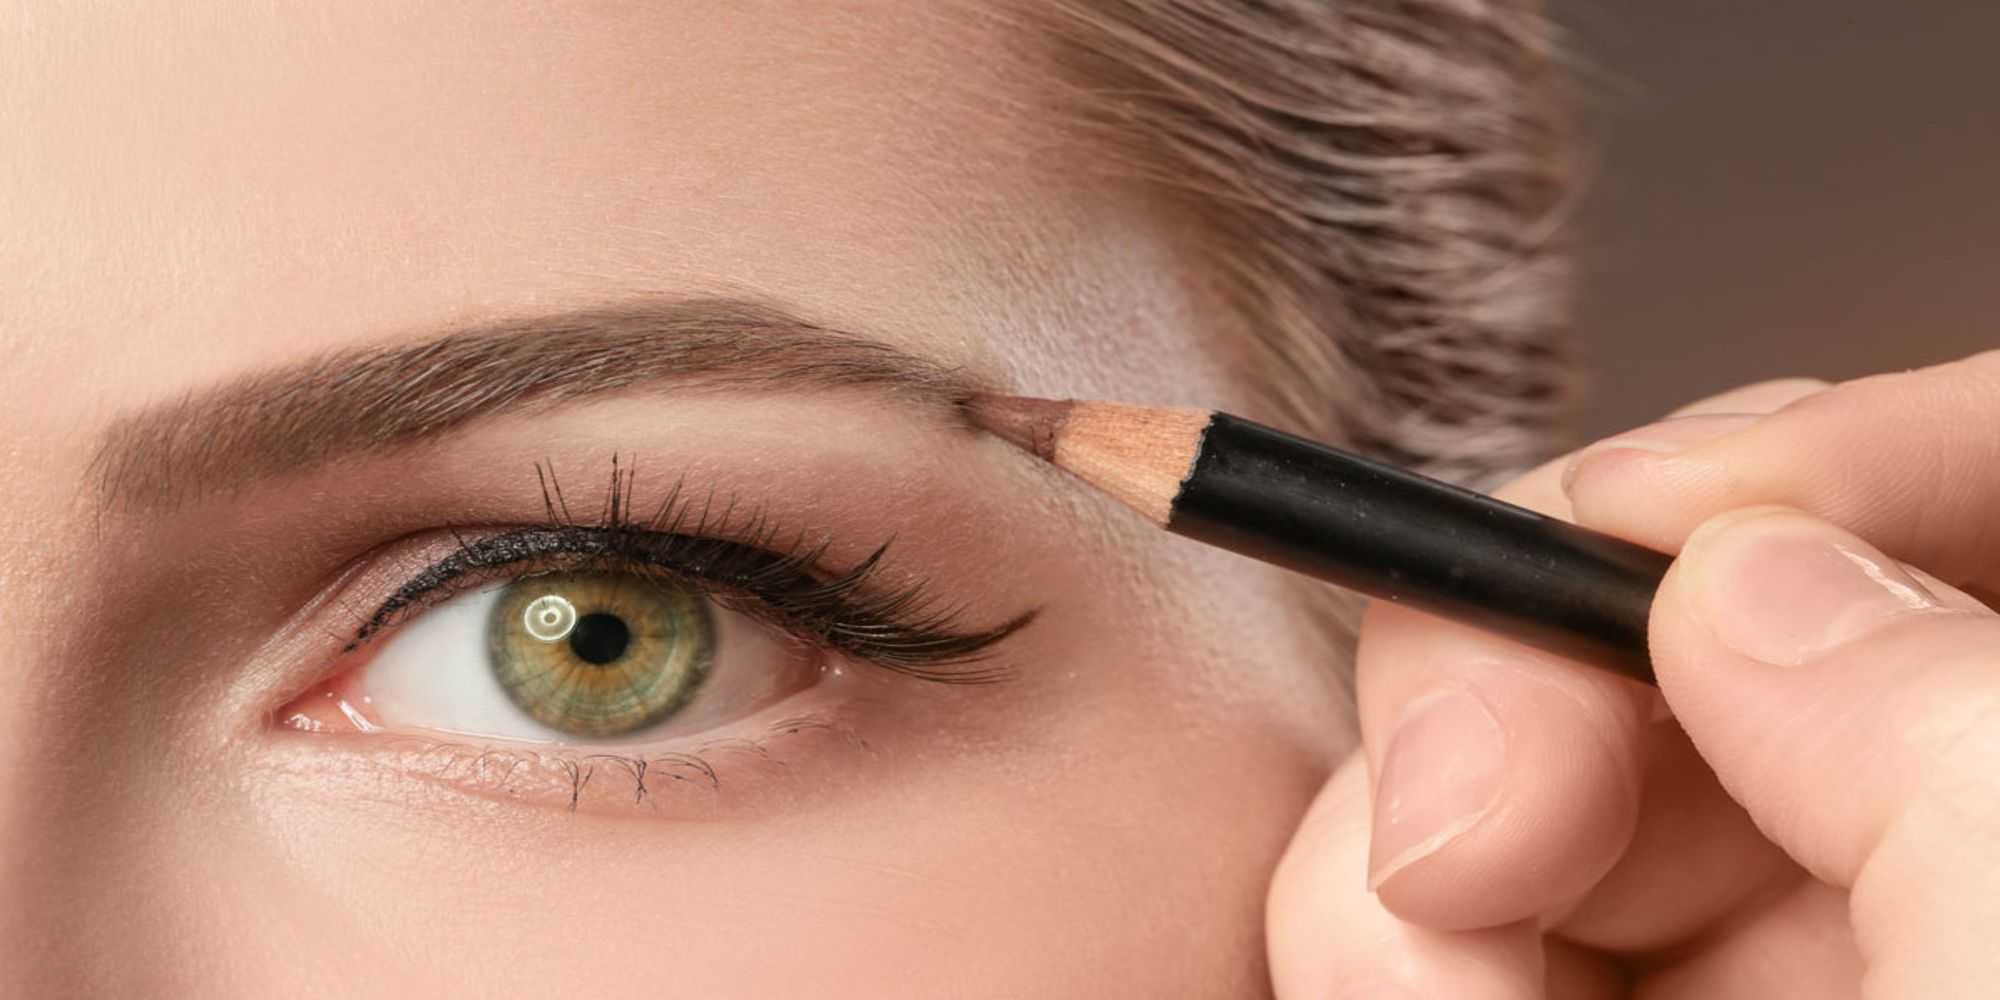 Как сделать идеальные брови если есть только карандаш для глаз